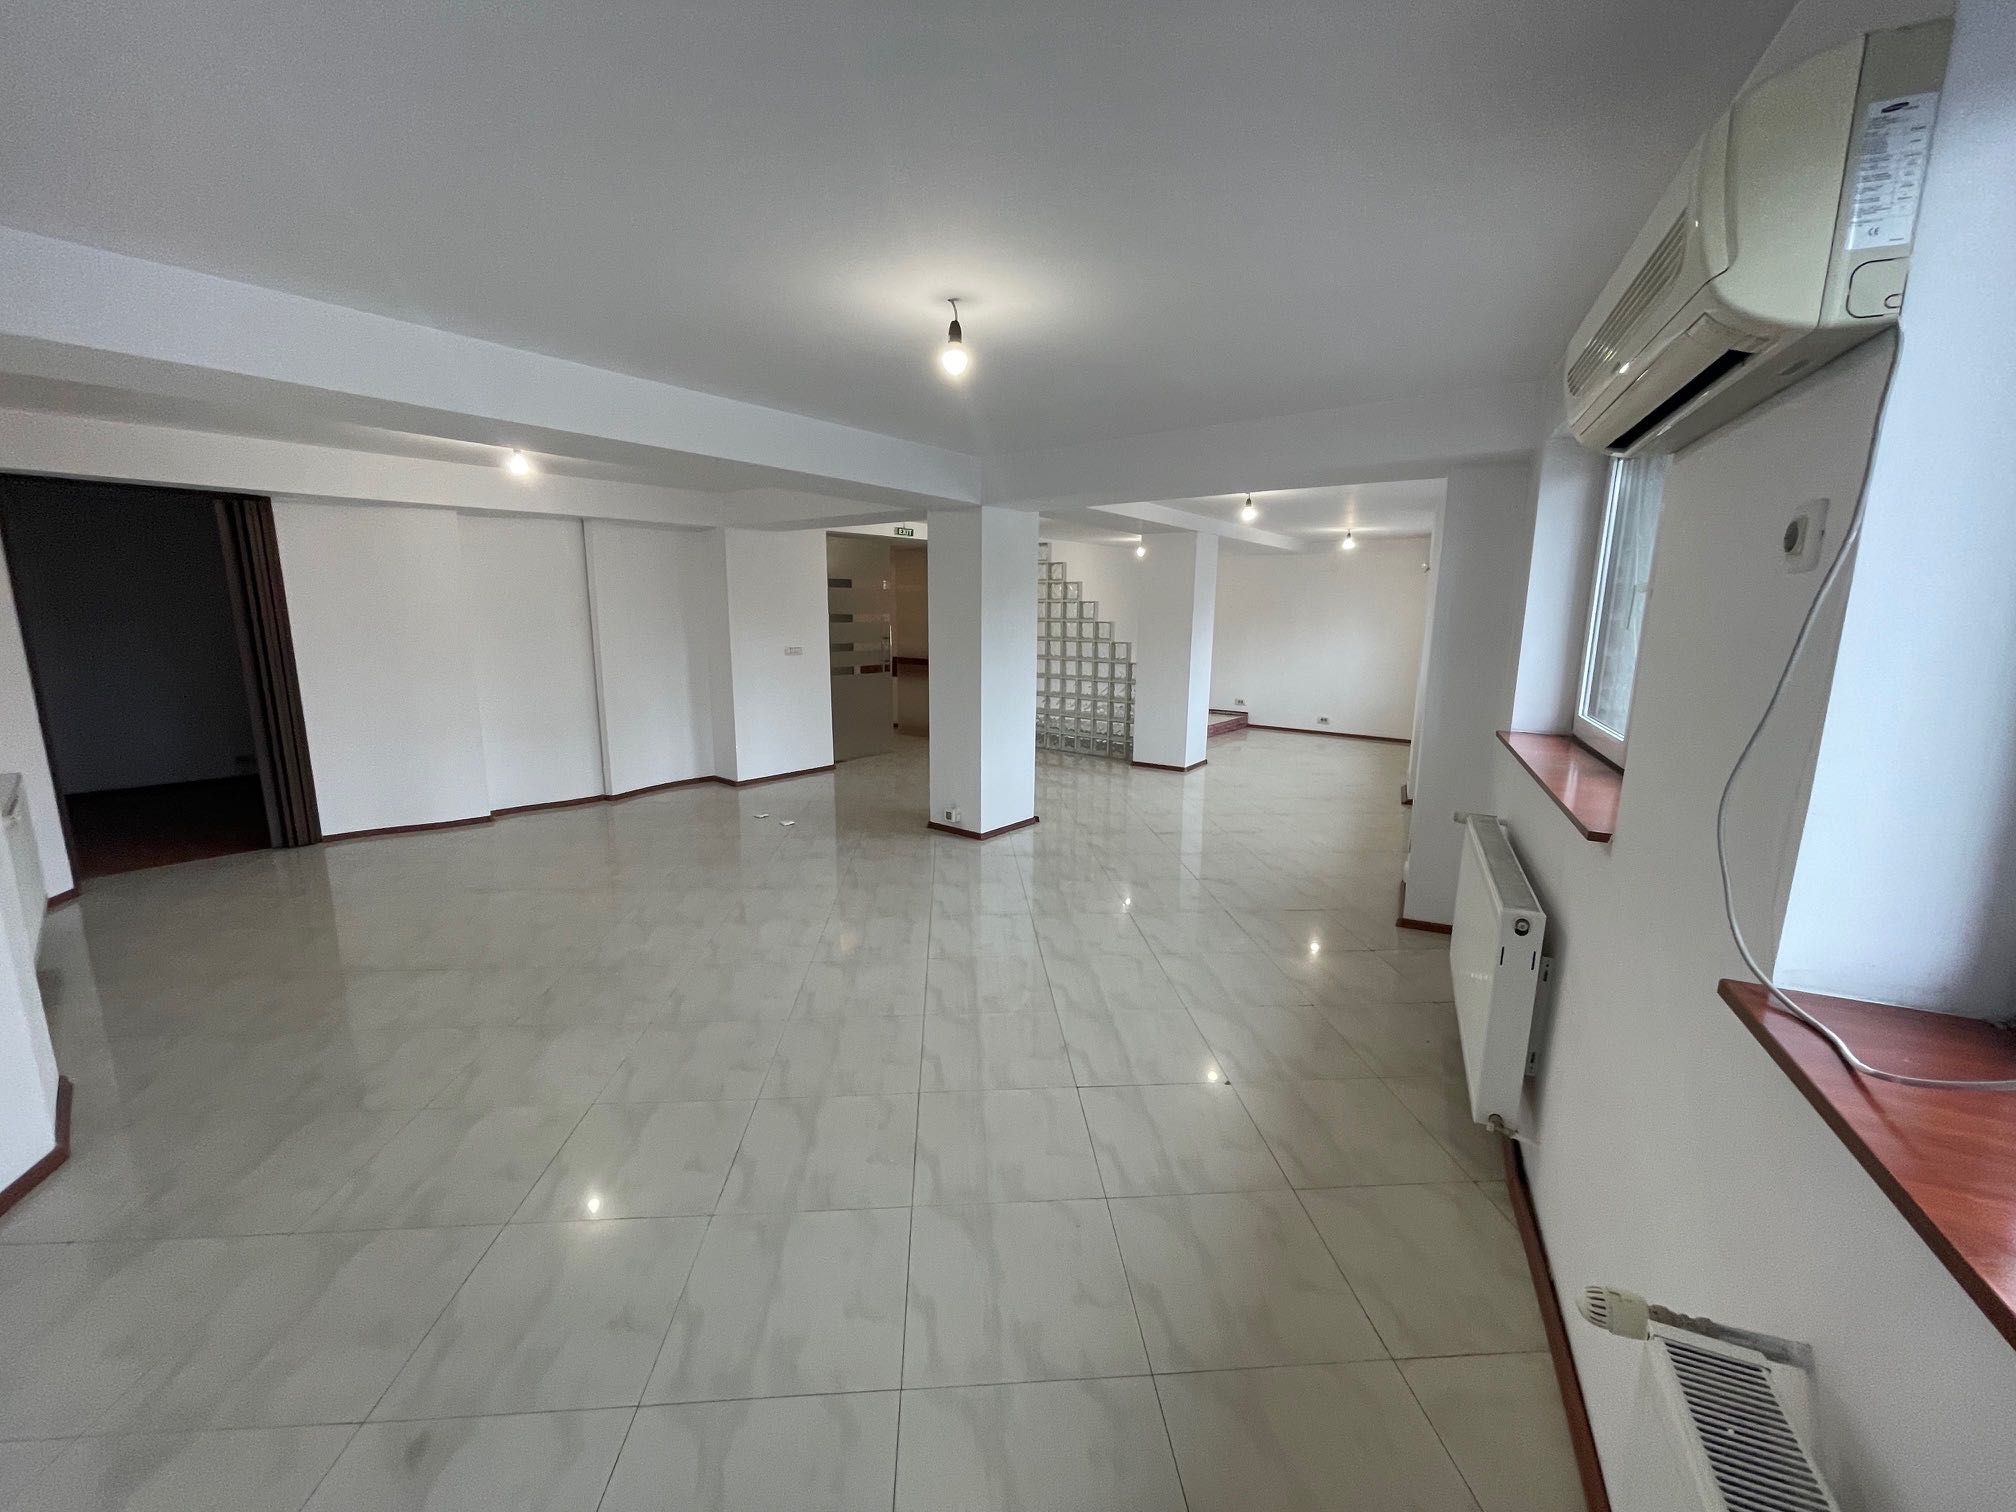 Inchiriez apartament in vila, 150mp pentru birouri, clinica